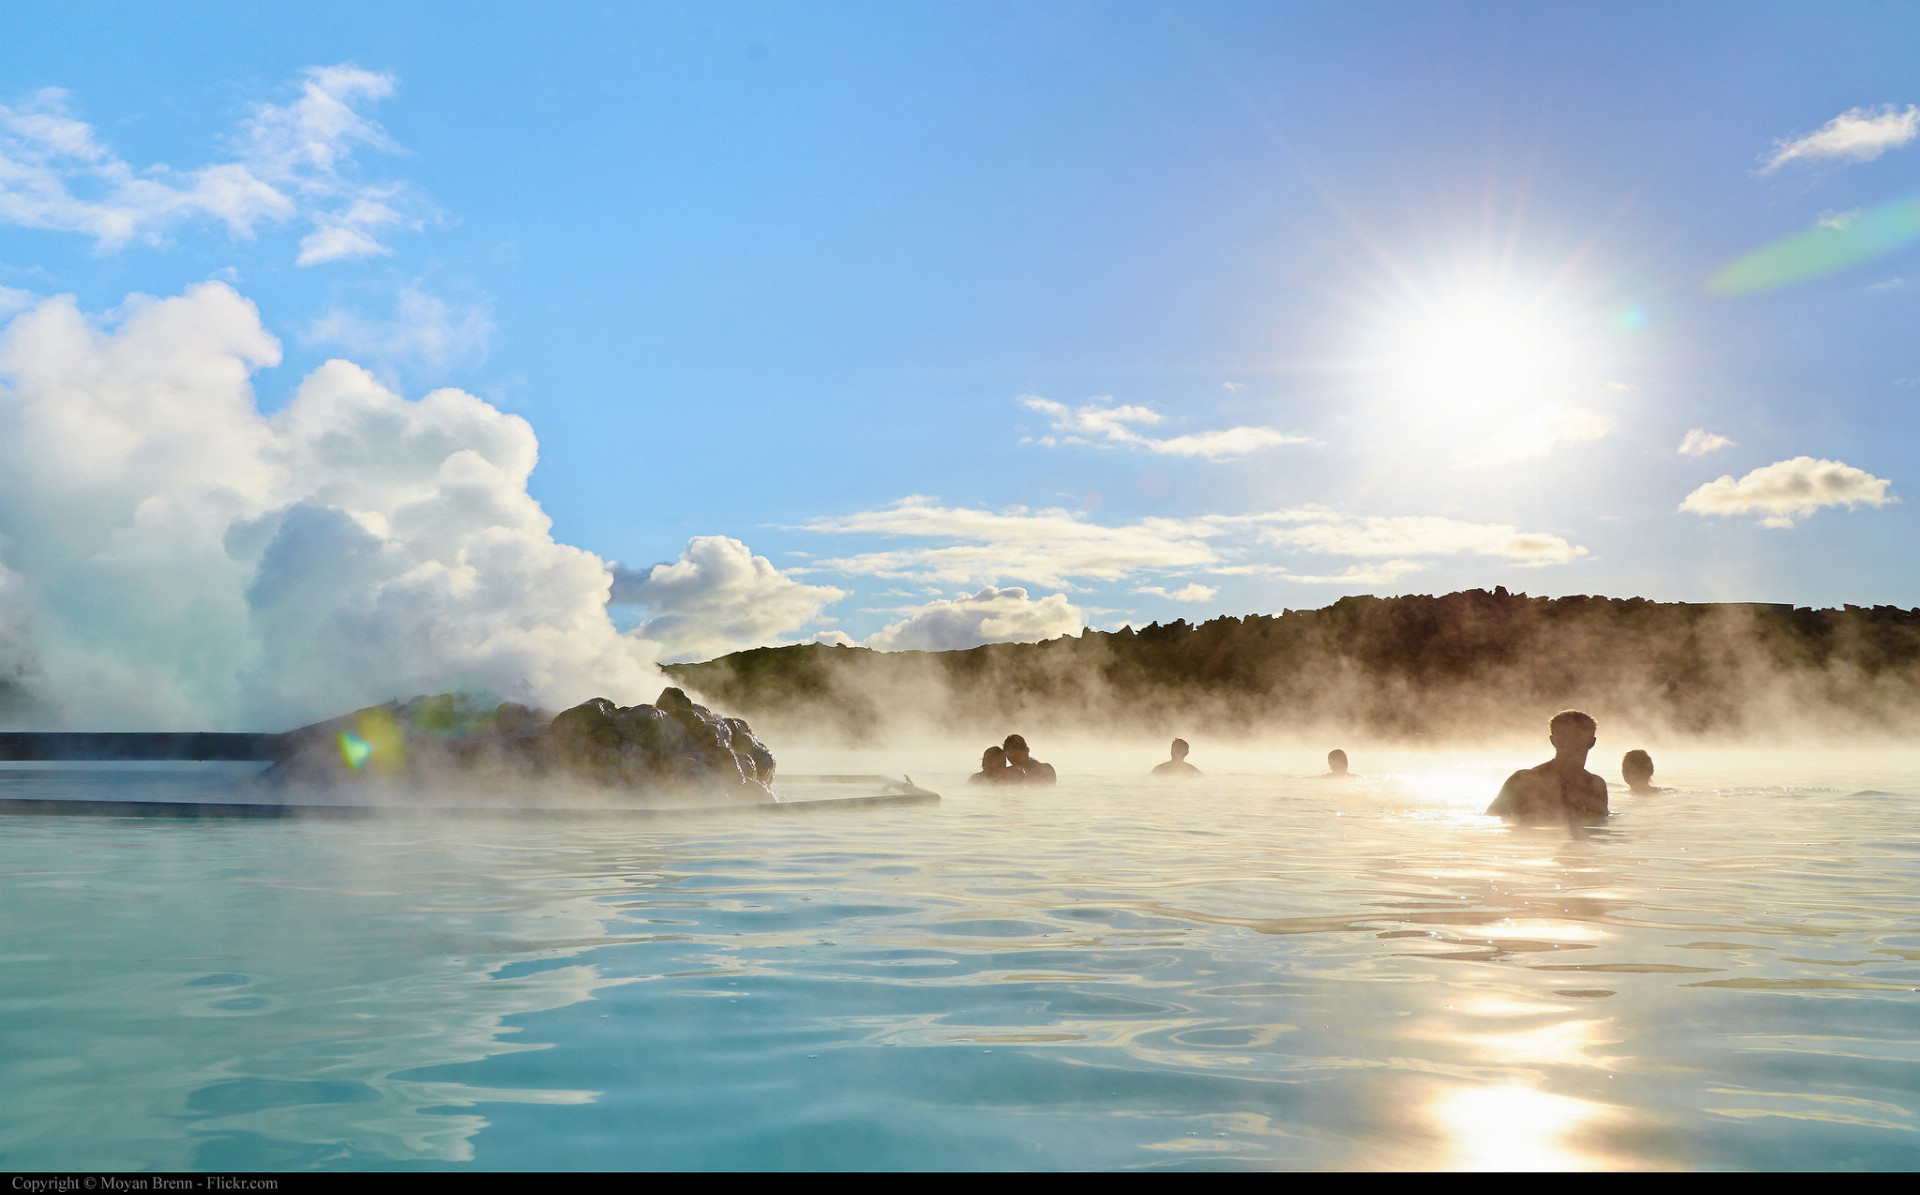 Modrá lagúna, Island. Prírodné geotermálne kúpele, ktorých voda je mliečne modrá a dosahuje teplotu 38 stupňov Celzia, majú blahodárne účinky na zdravie. 